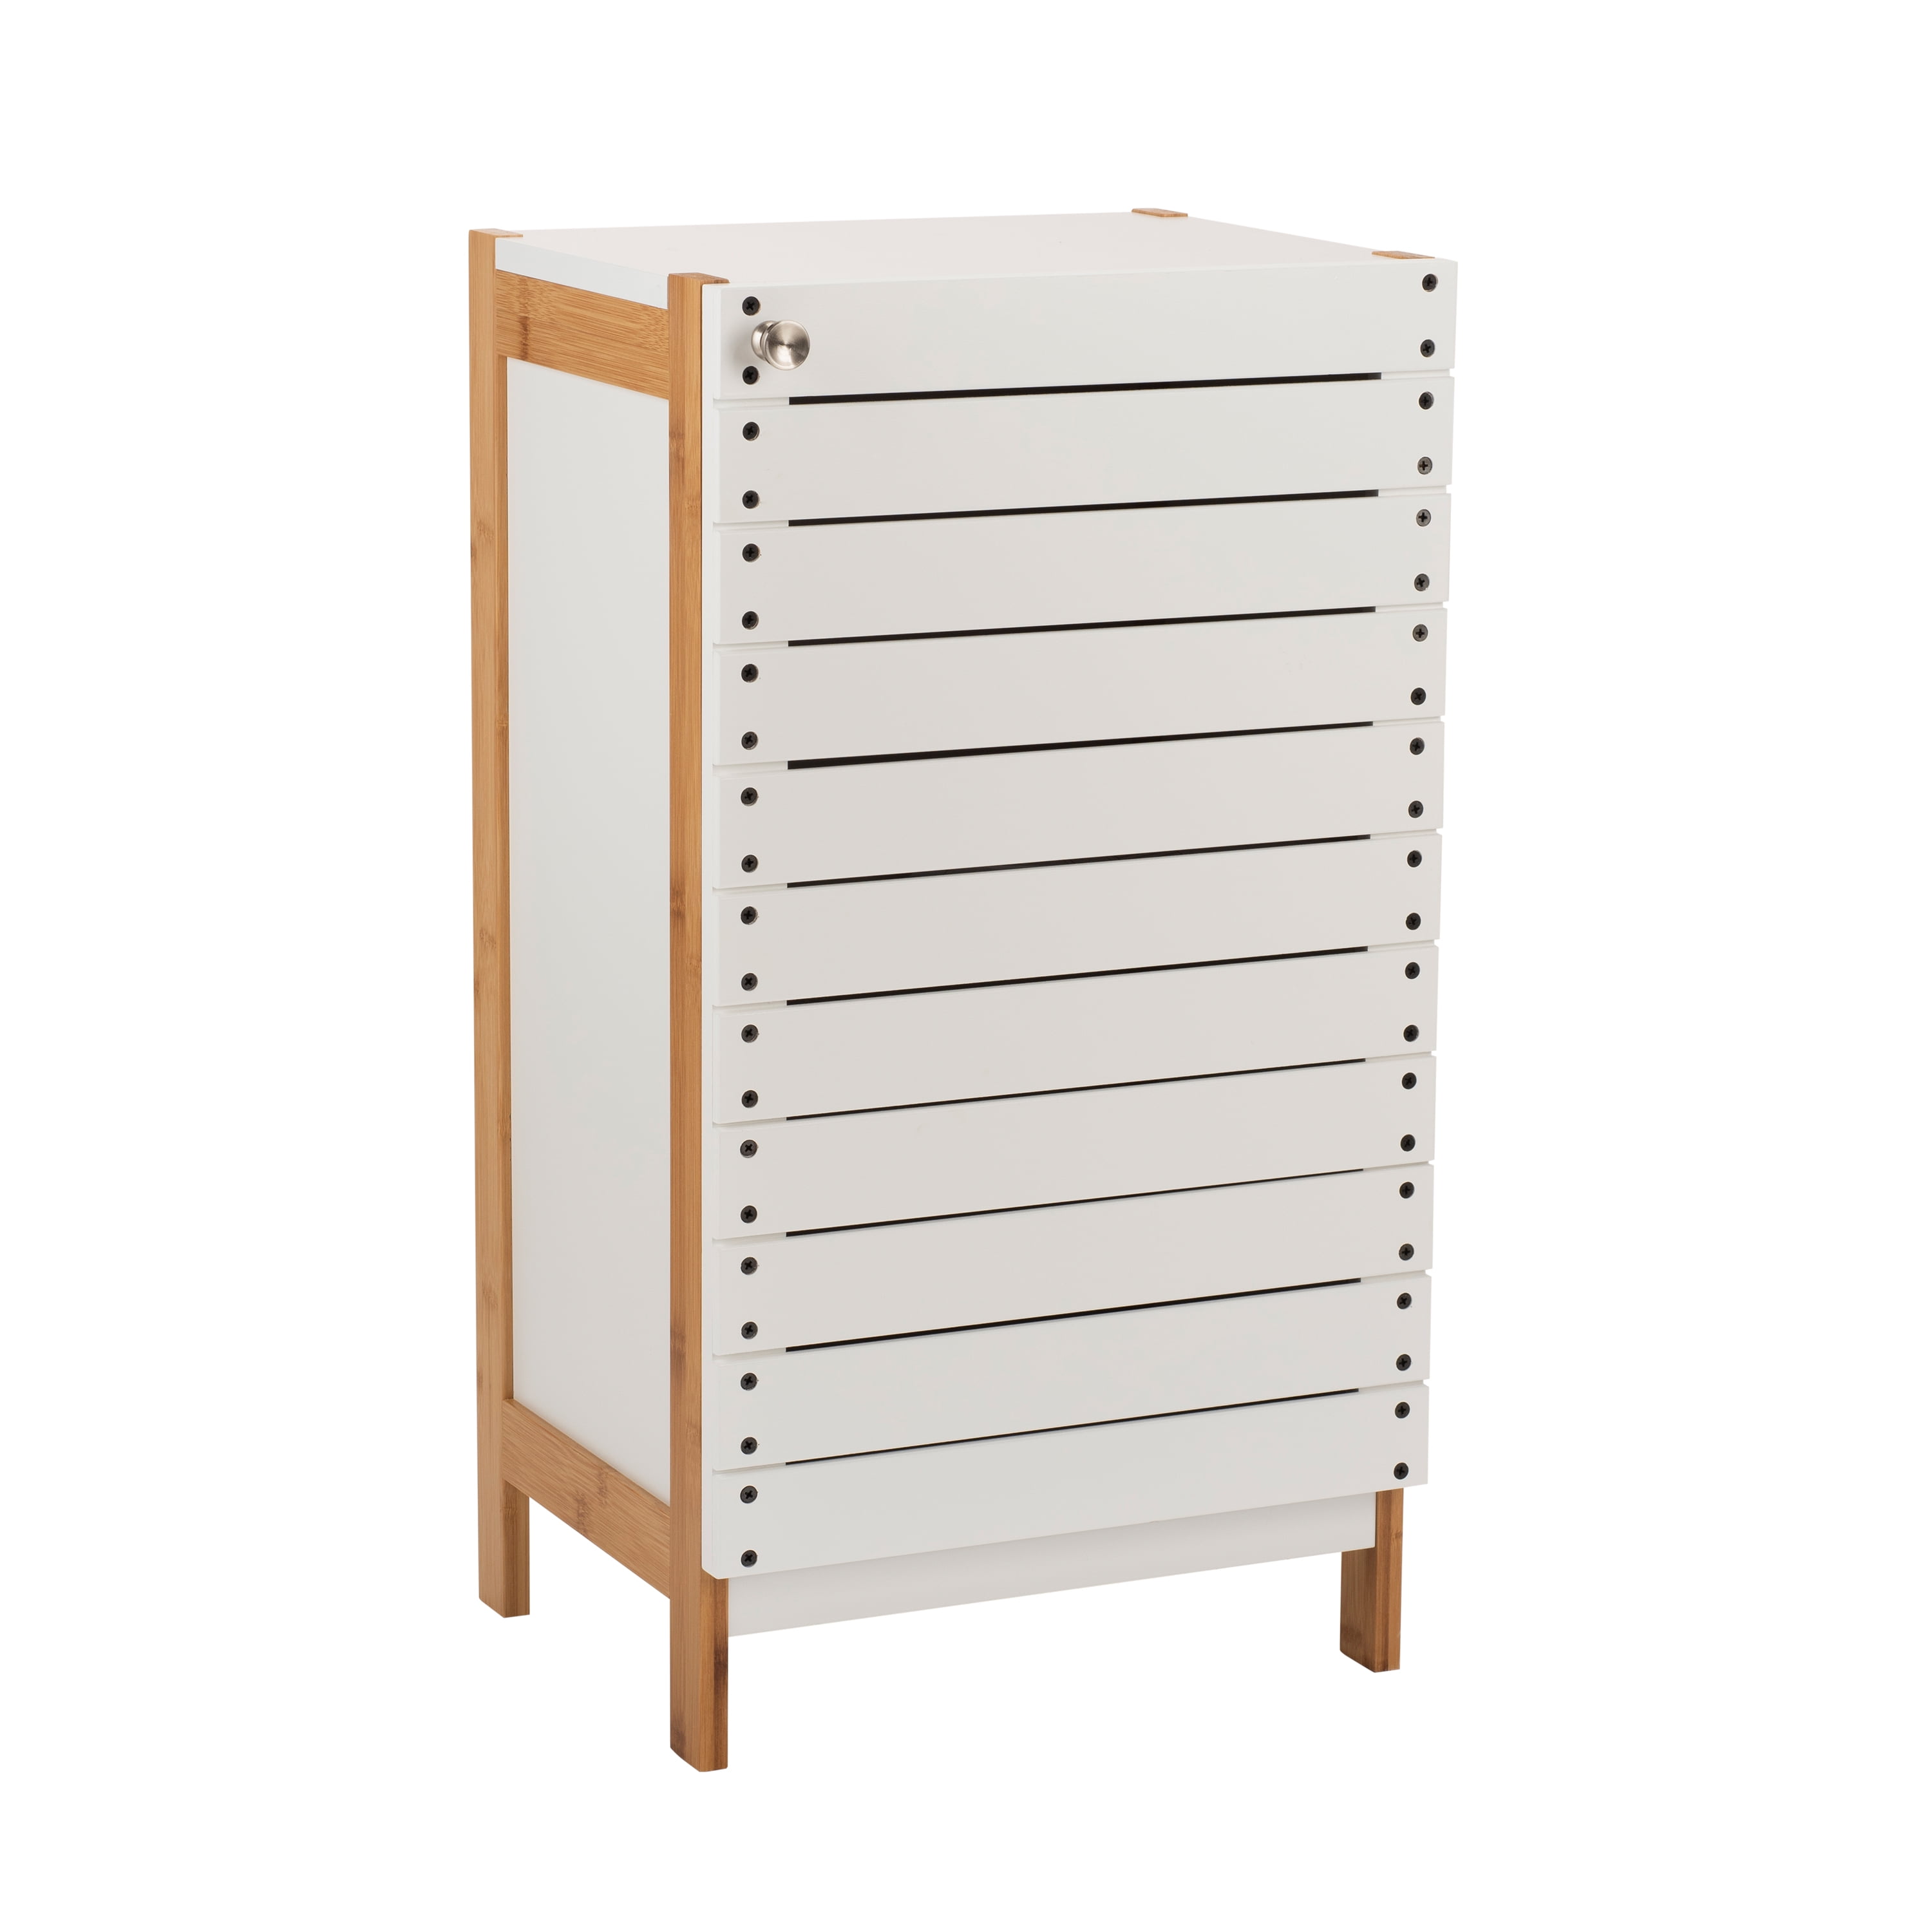 Details about   Giantex Two-door Bamboo Bathroom Floor Cabinet Storage Organizer w/ Open Shelf 